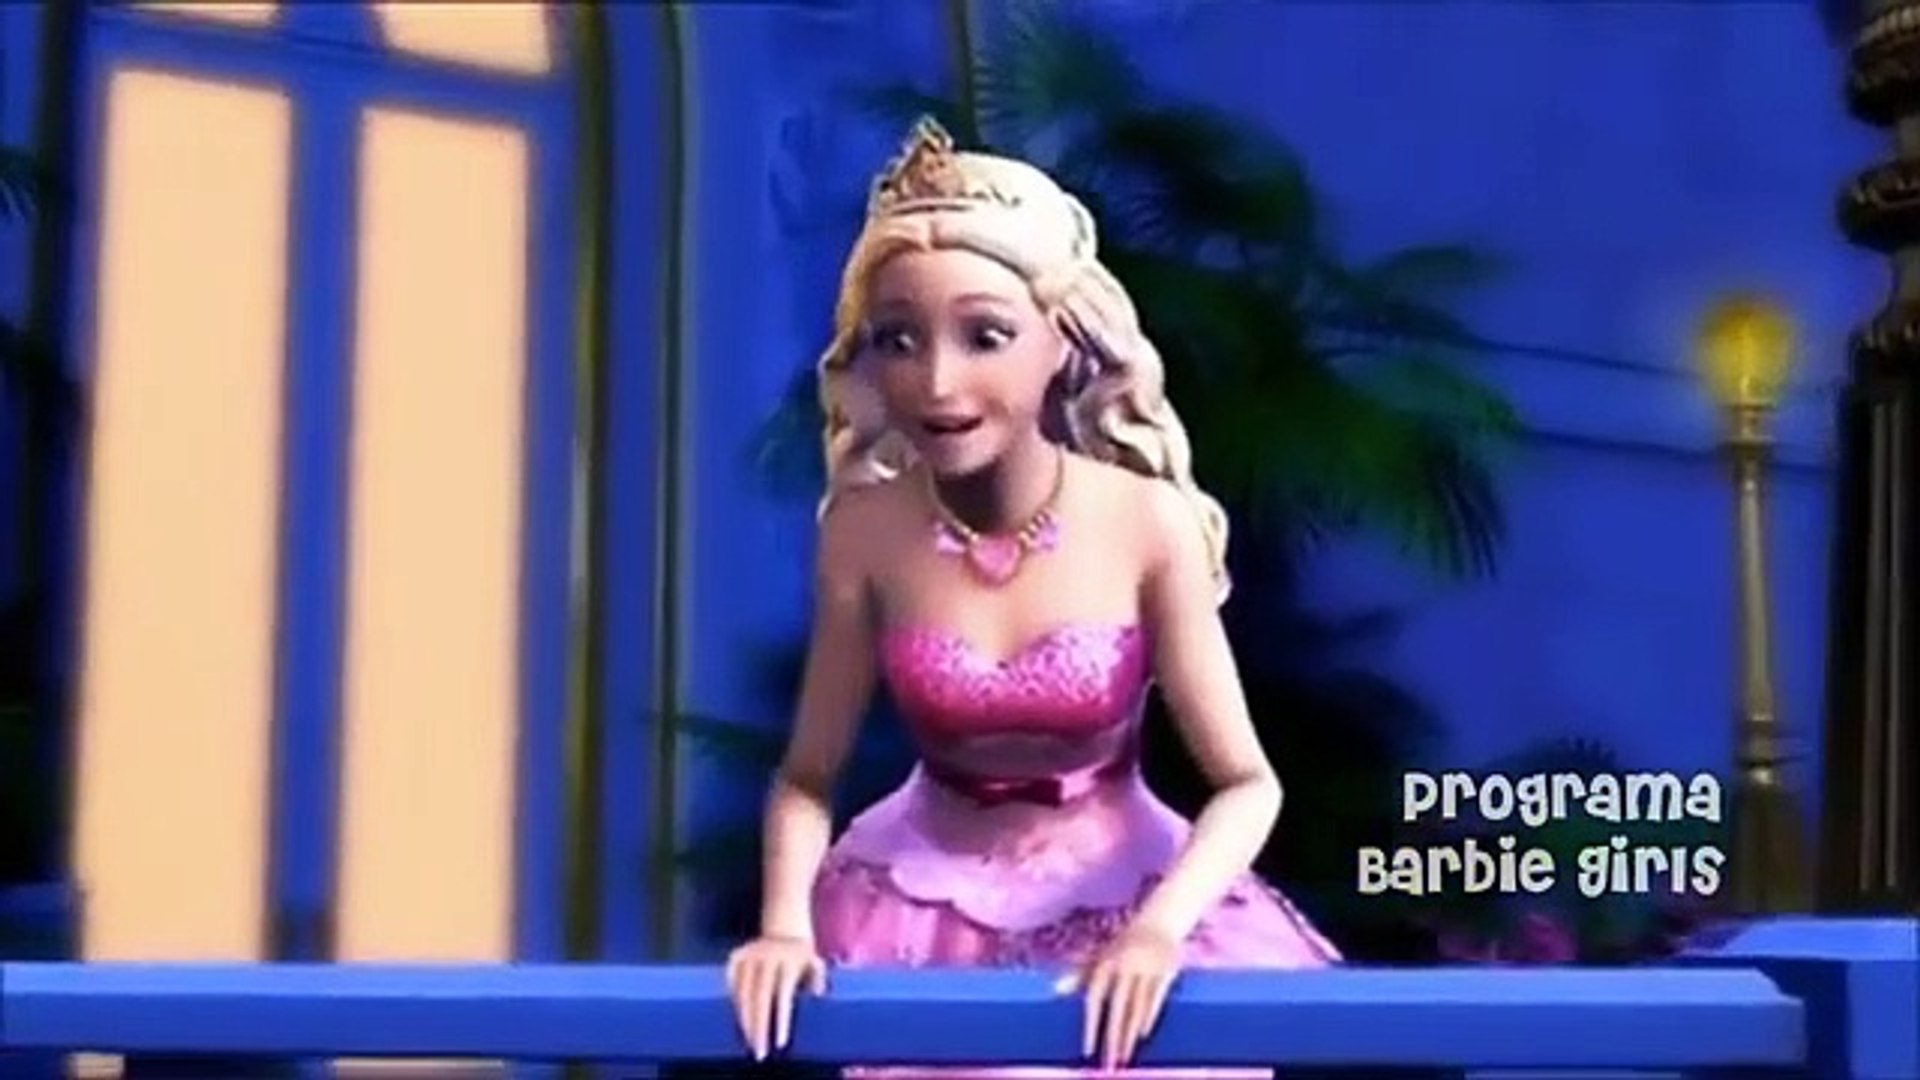 Barbie Princesa Pop Star - Aqui Estou - PT-PT 